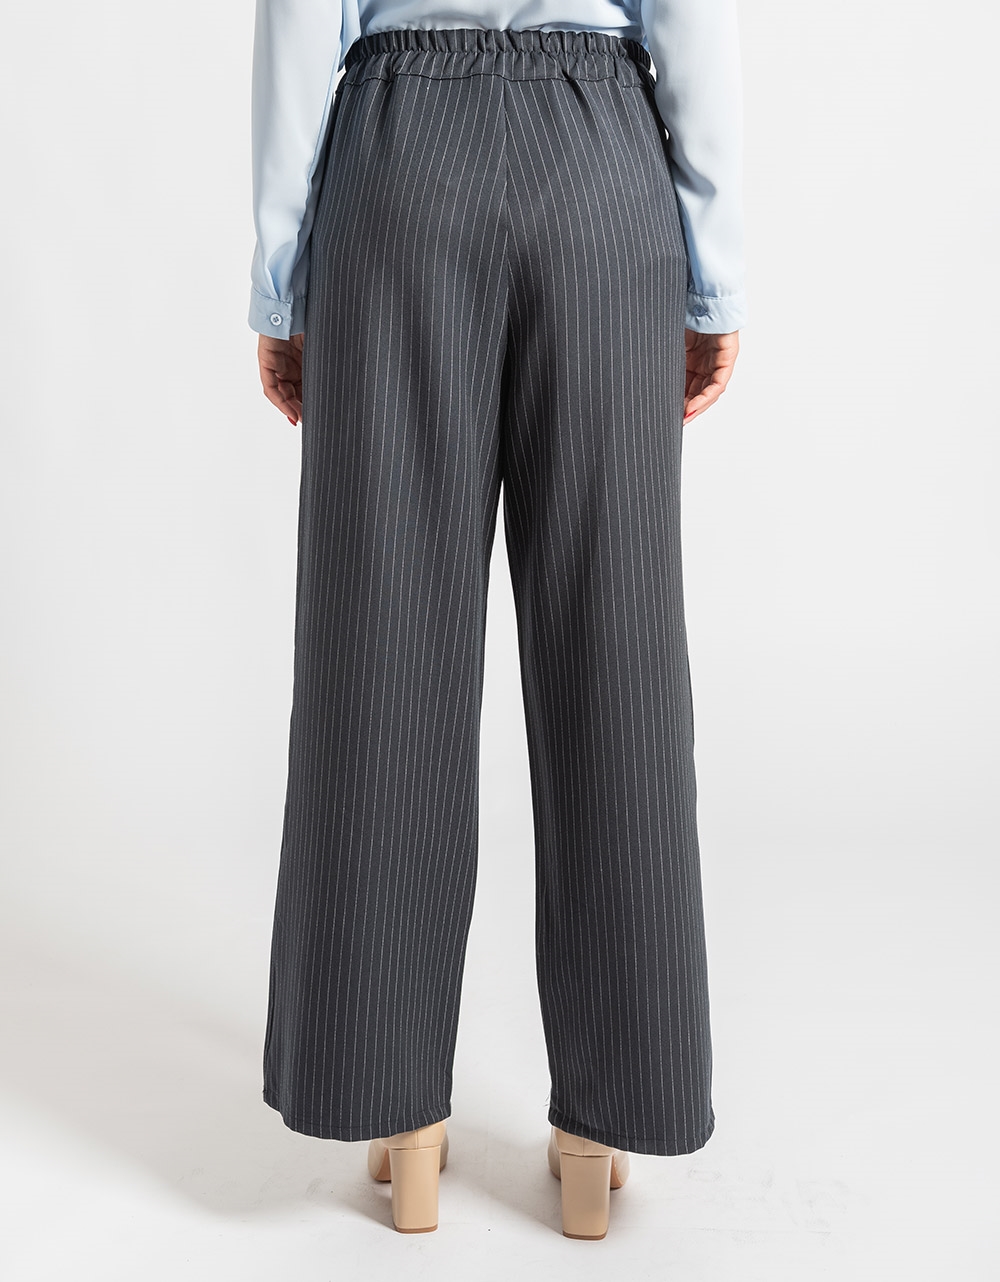 Εικόνα από Σετ παντελόνι με ρίγα και σταυρωτό σακάκι μακρύ Μπλε